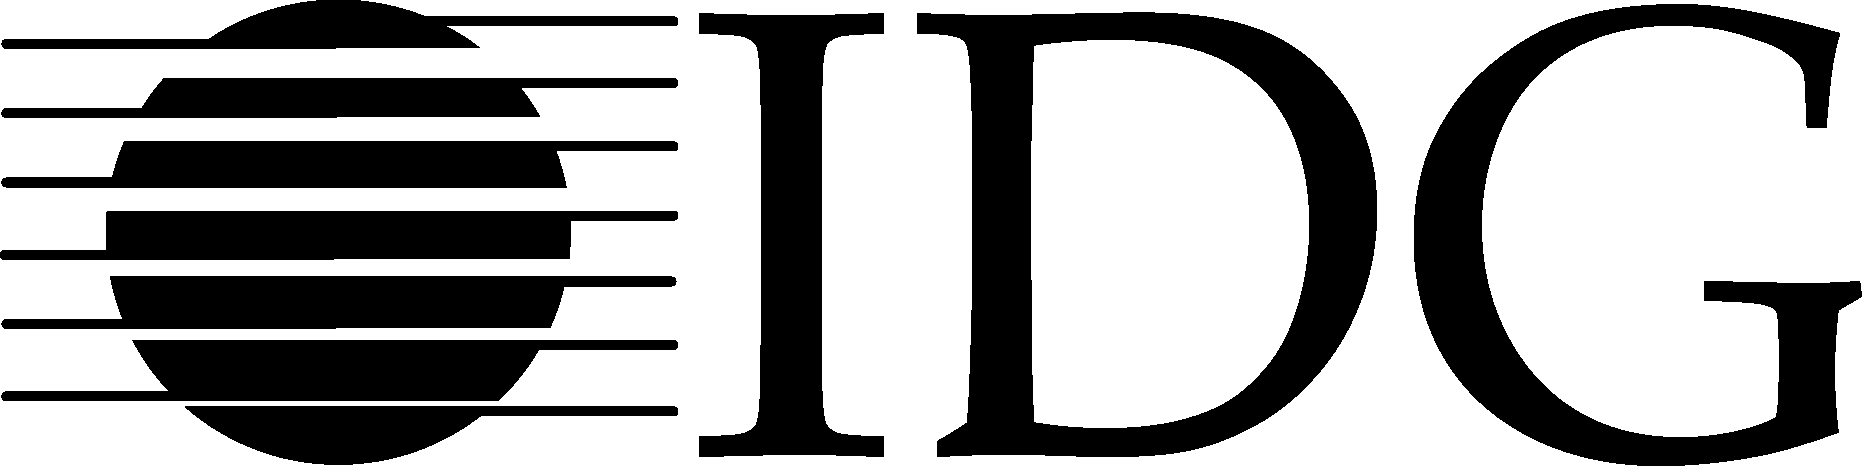 International Data Group (IDG) Logo png